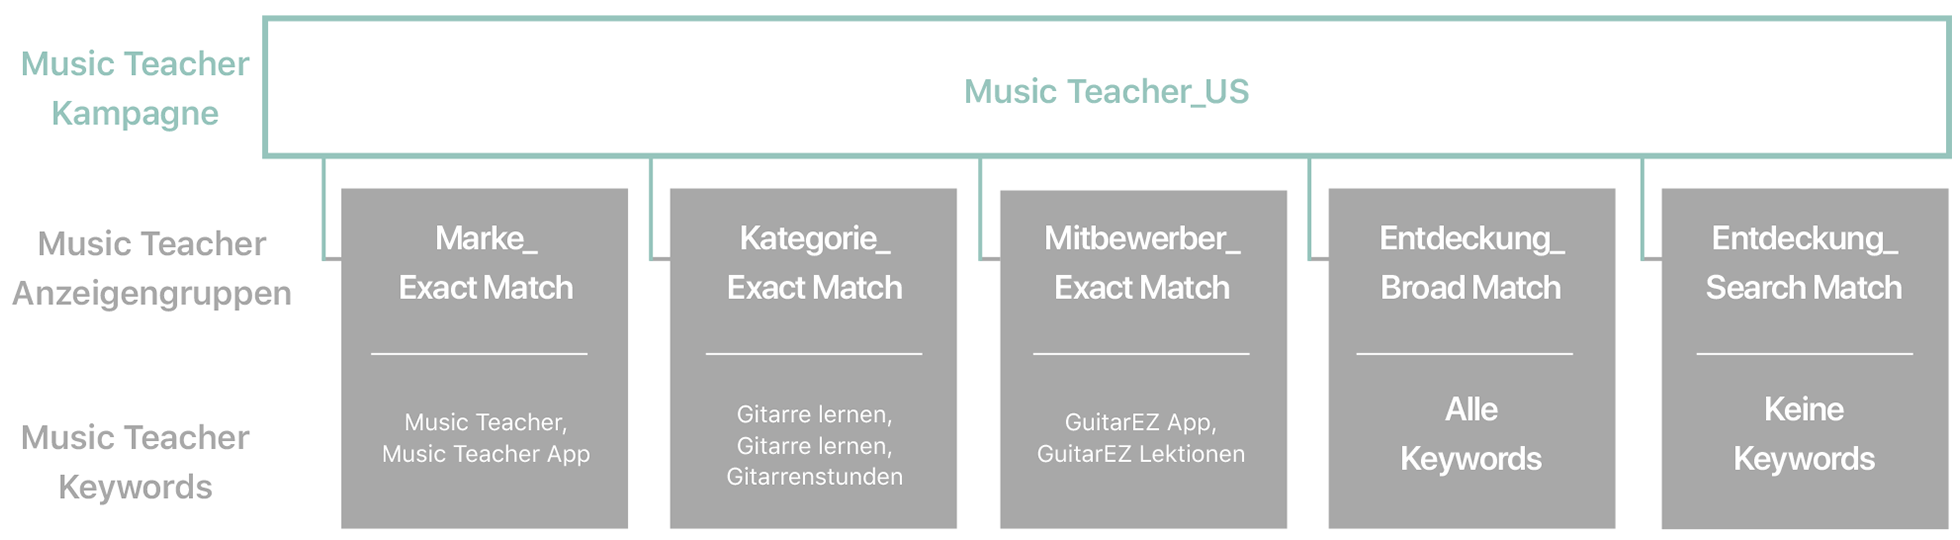 Abbildung der Kampagnentypen und zugehörigen Anzeigengruppen sowie vorgeschlagene Keywords und Tipps für die Beispiel-App Music Teacher. 